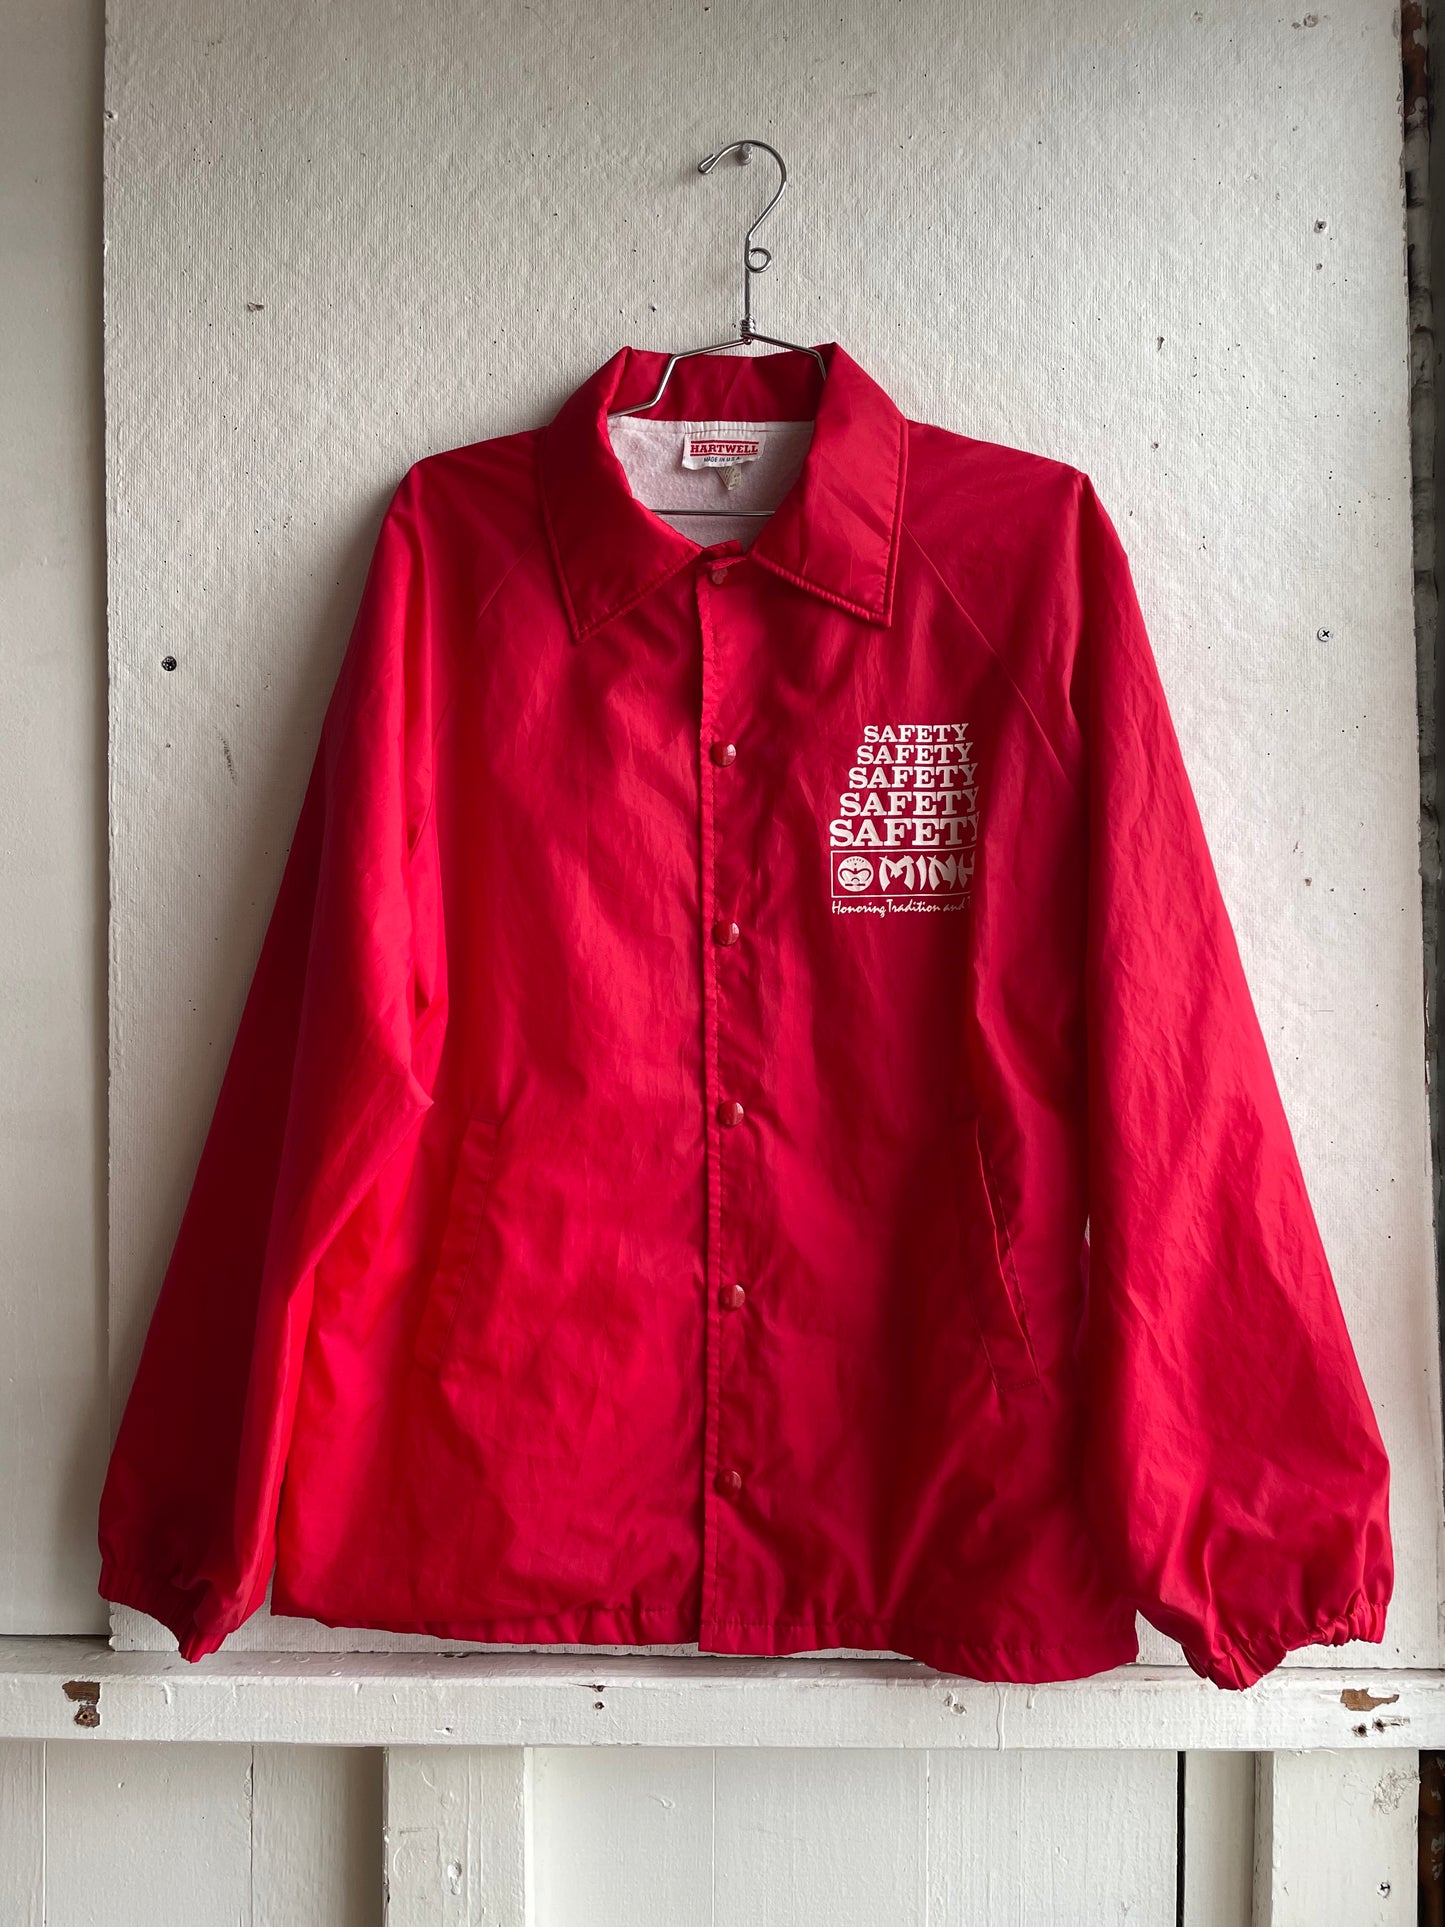 Vintage Red Safety Jacket